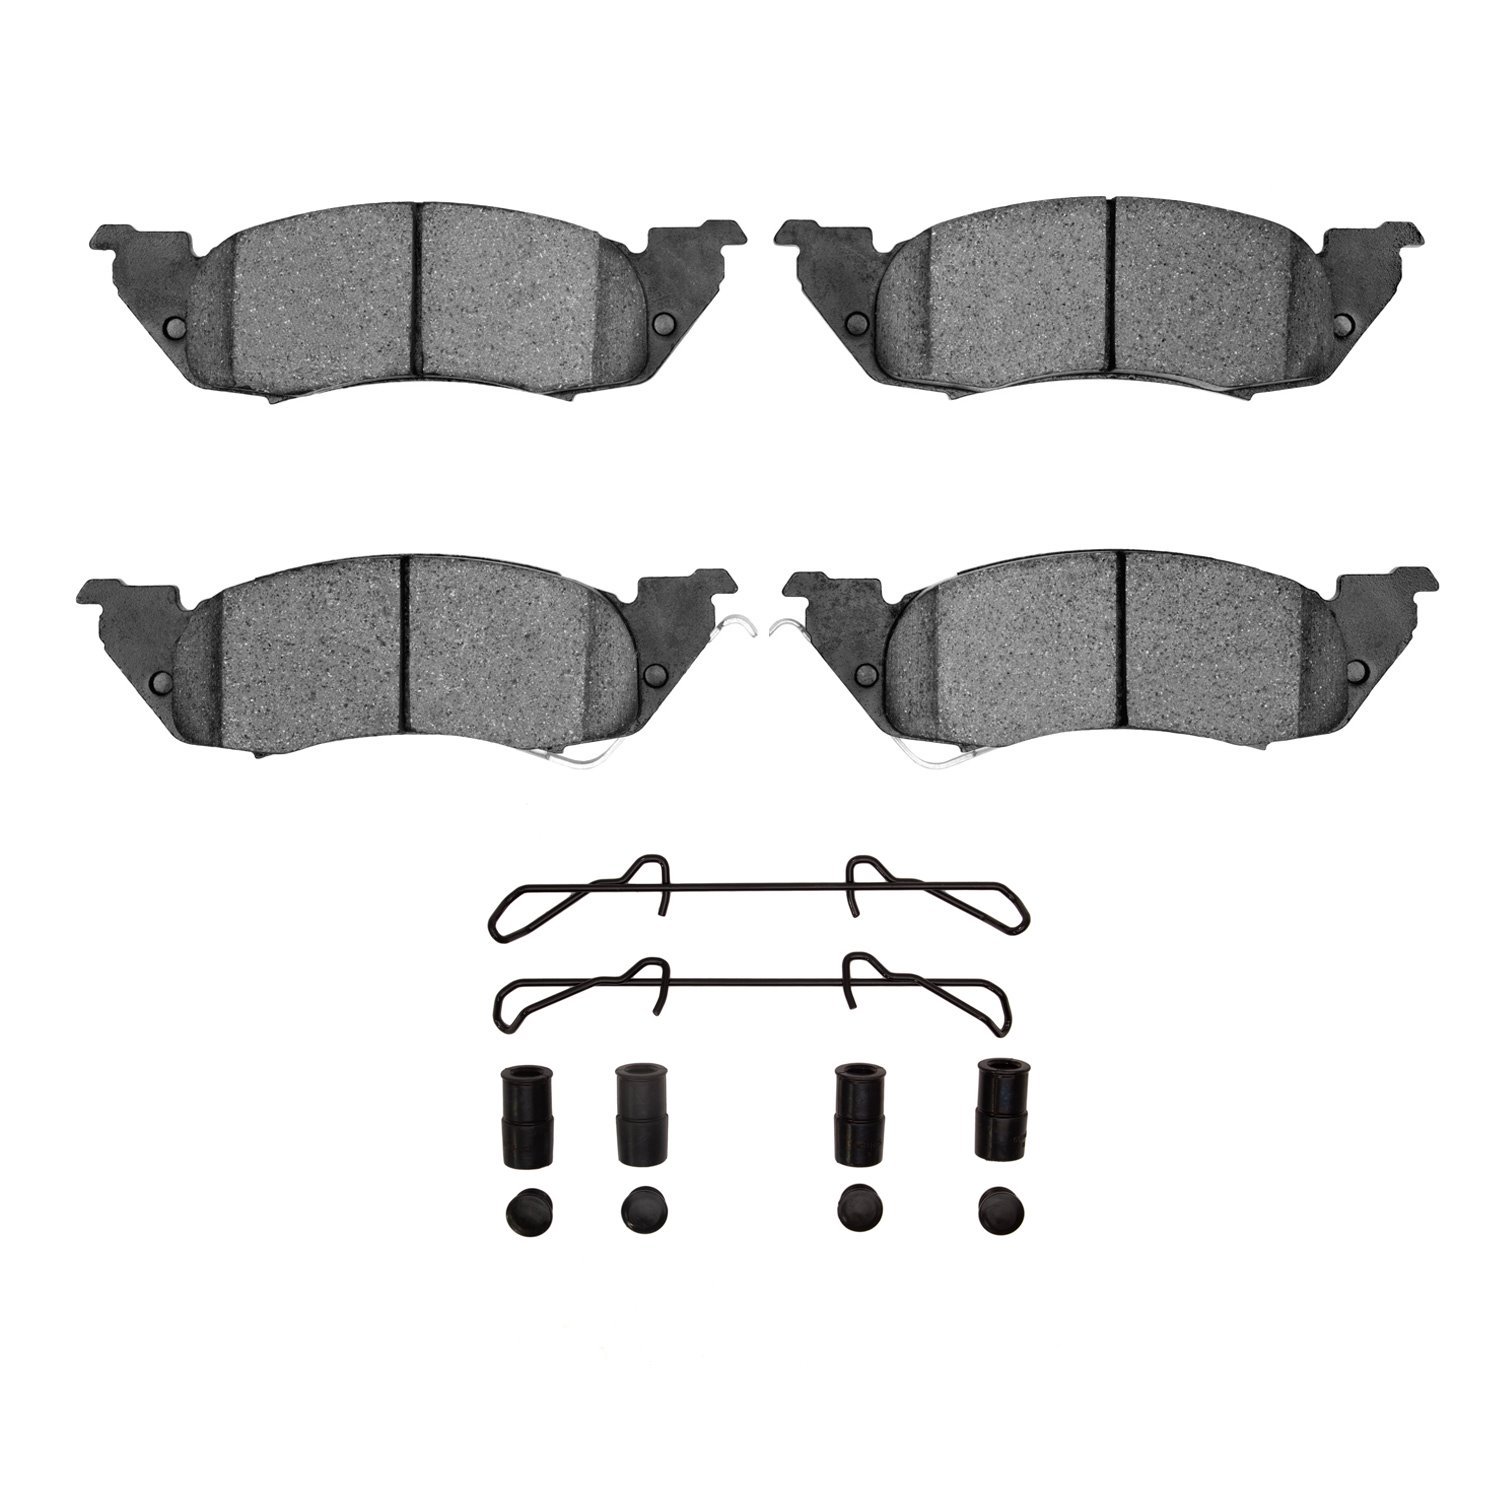 Ceramic Brake Pads & Hardware Kit, 1991-1998 Mopar, Position: Front